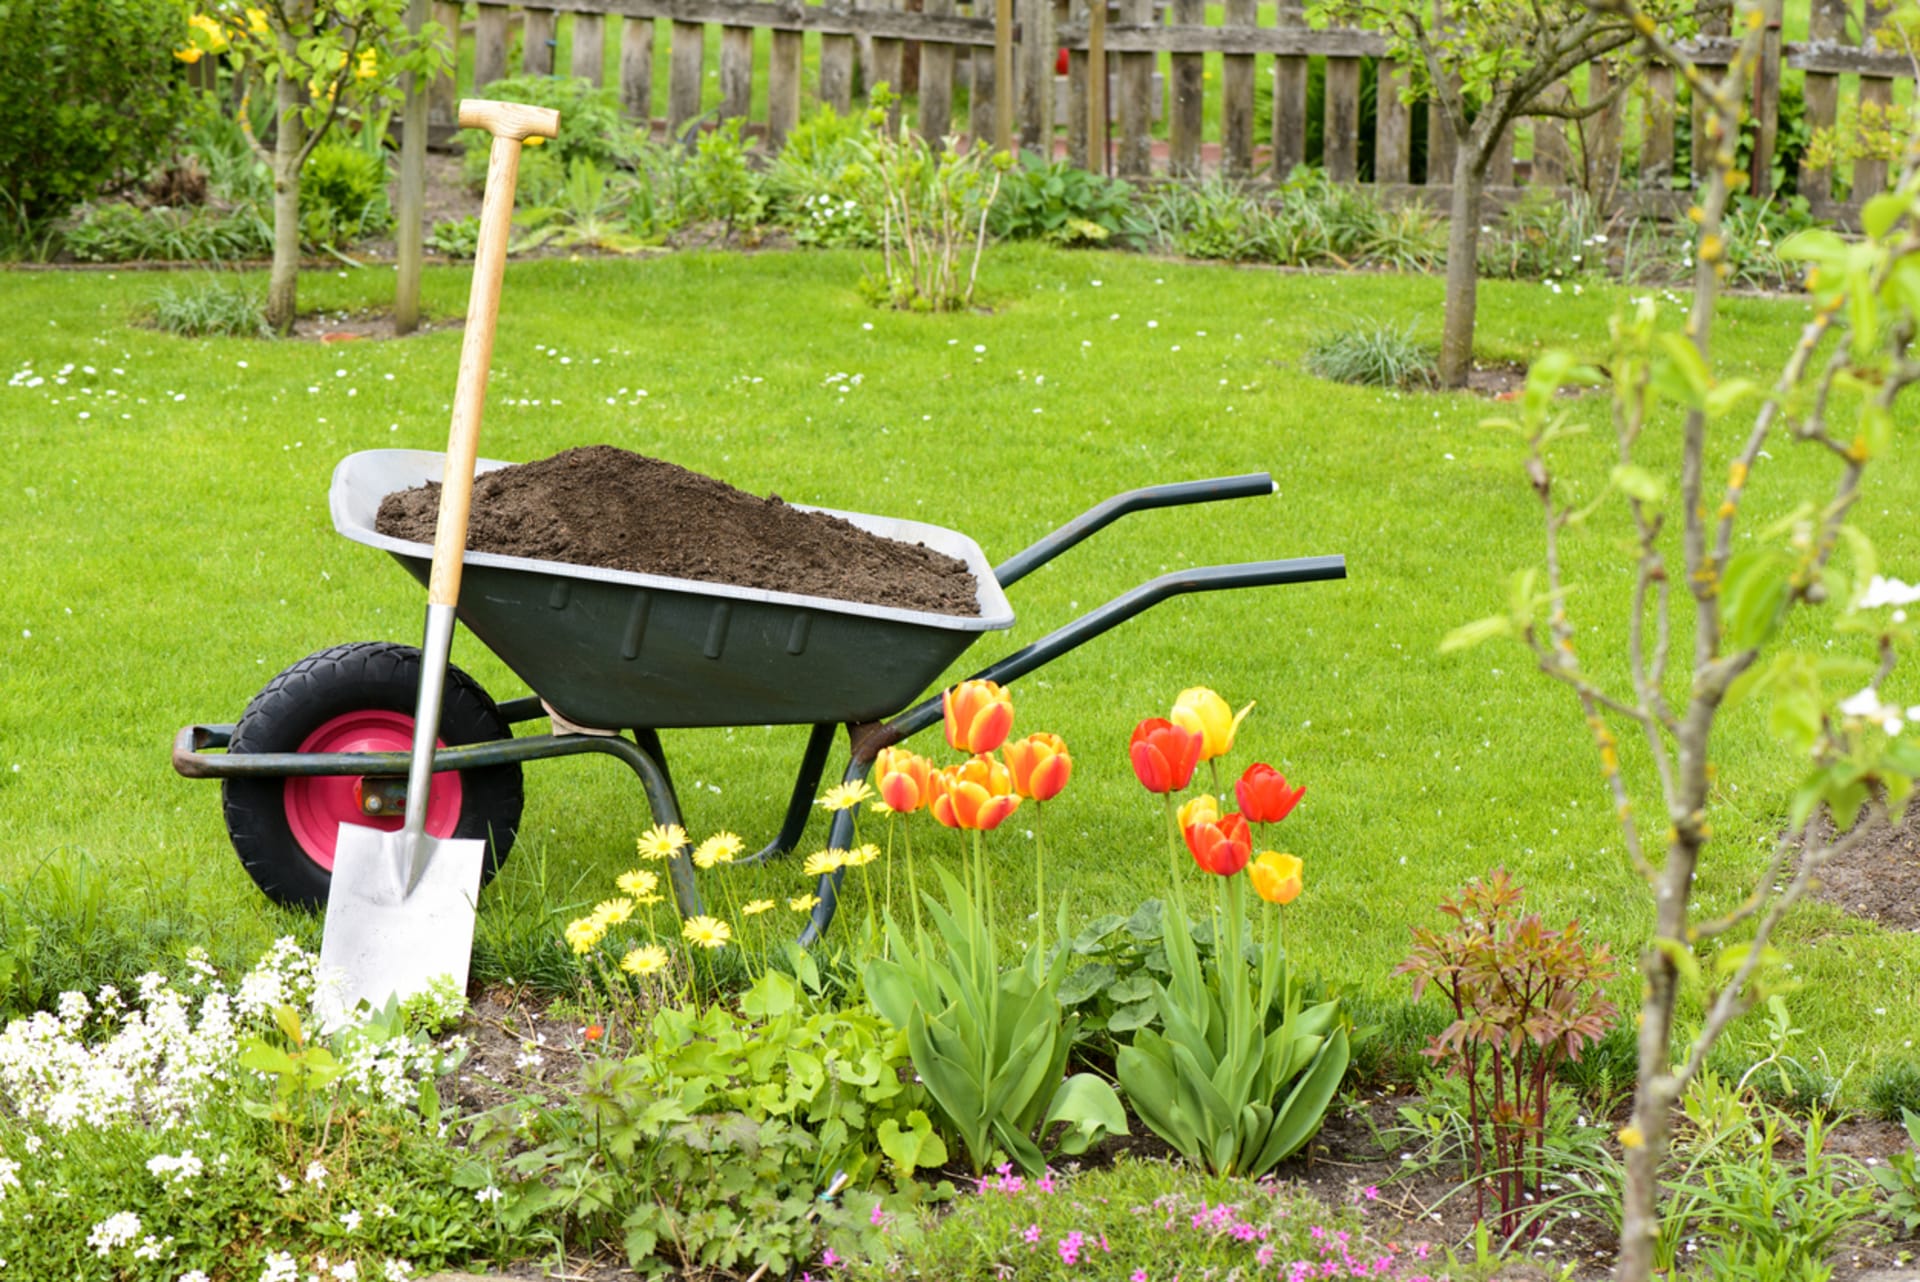 Zahradnické nářadí: Nekupujte zbytečnosti! Poradíme vám, co při práci na zahradě skutečně využijete. 3